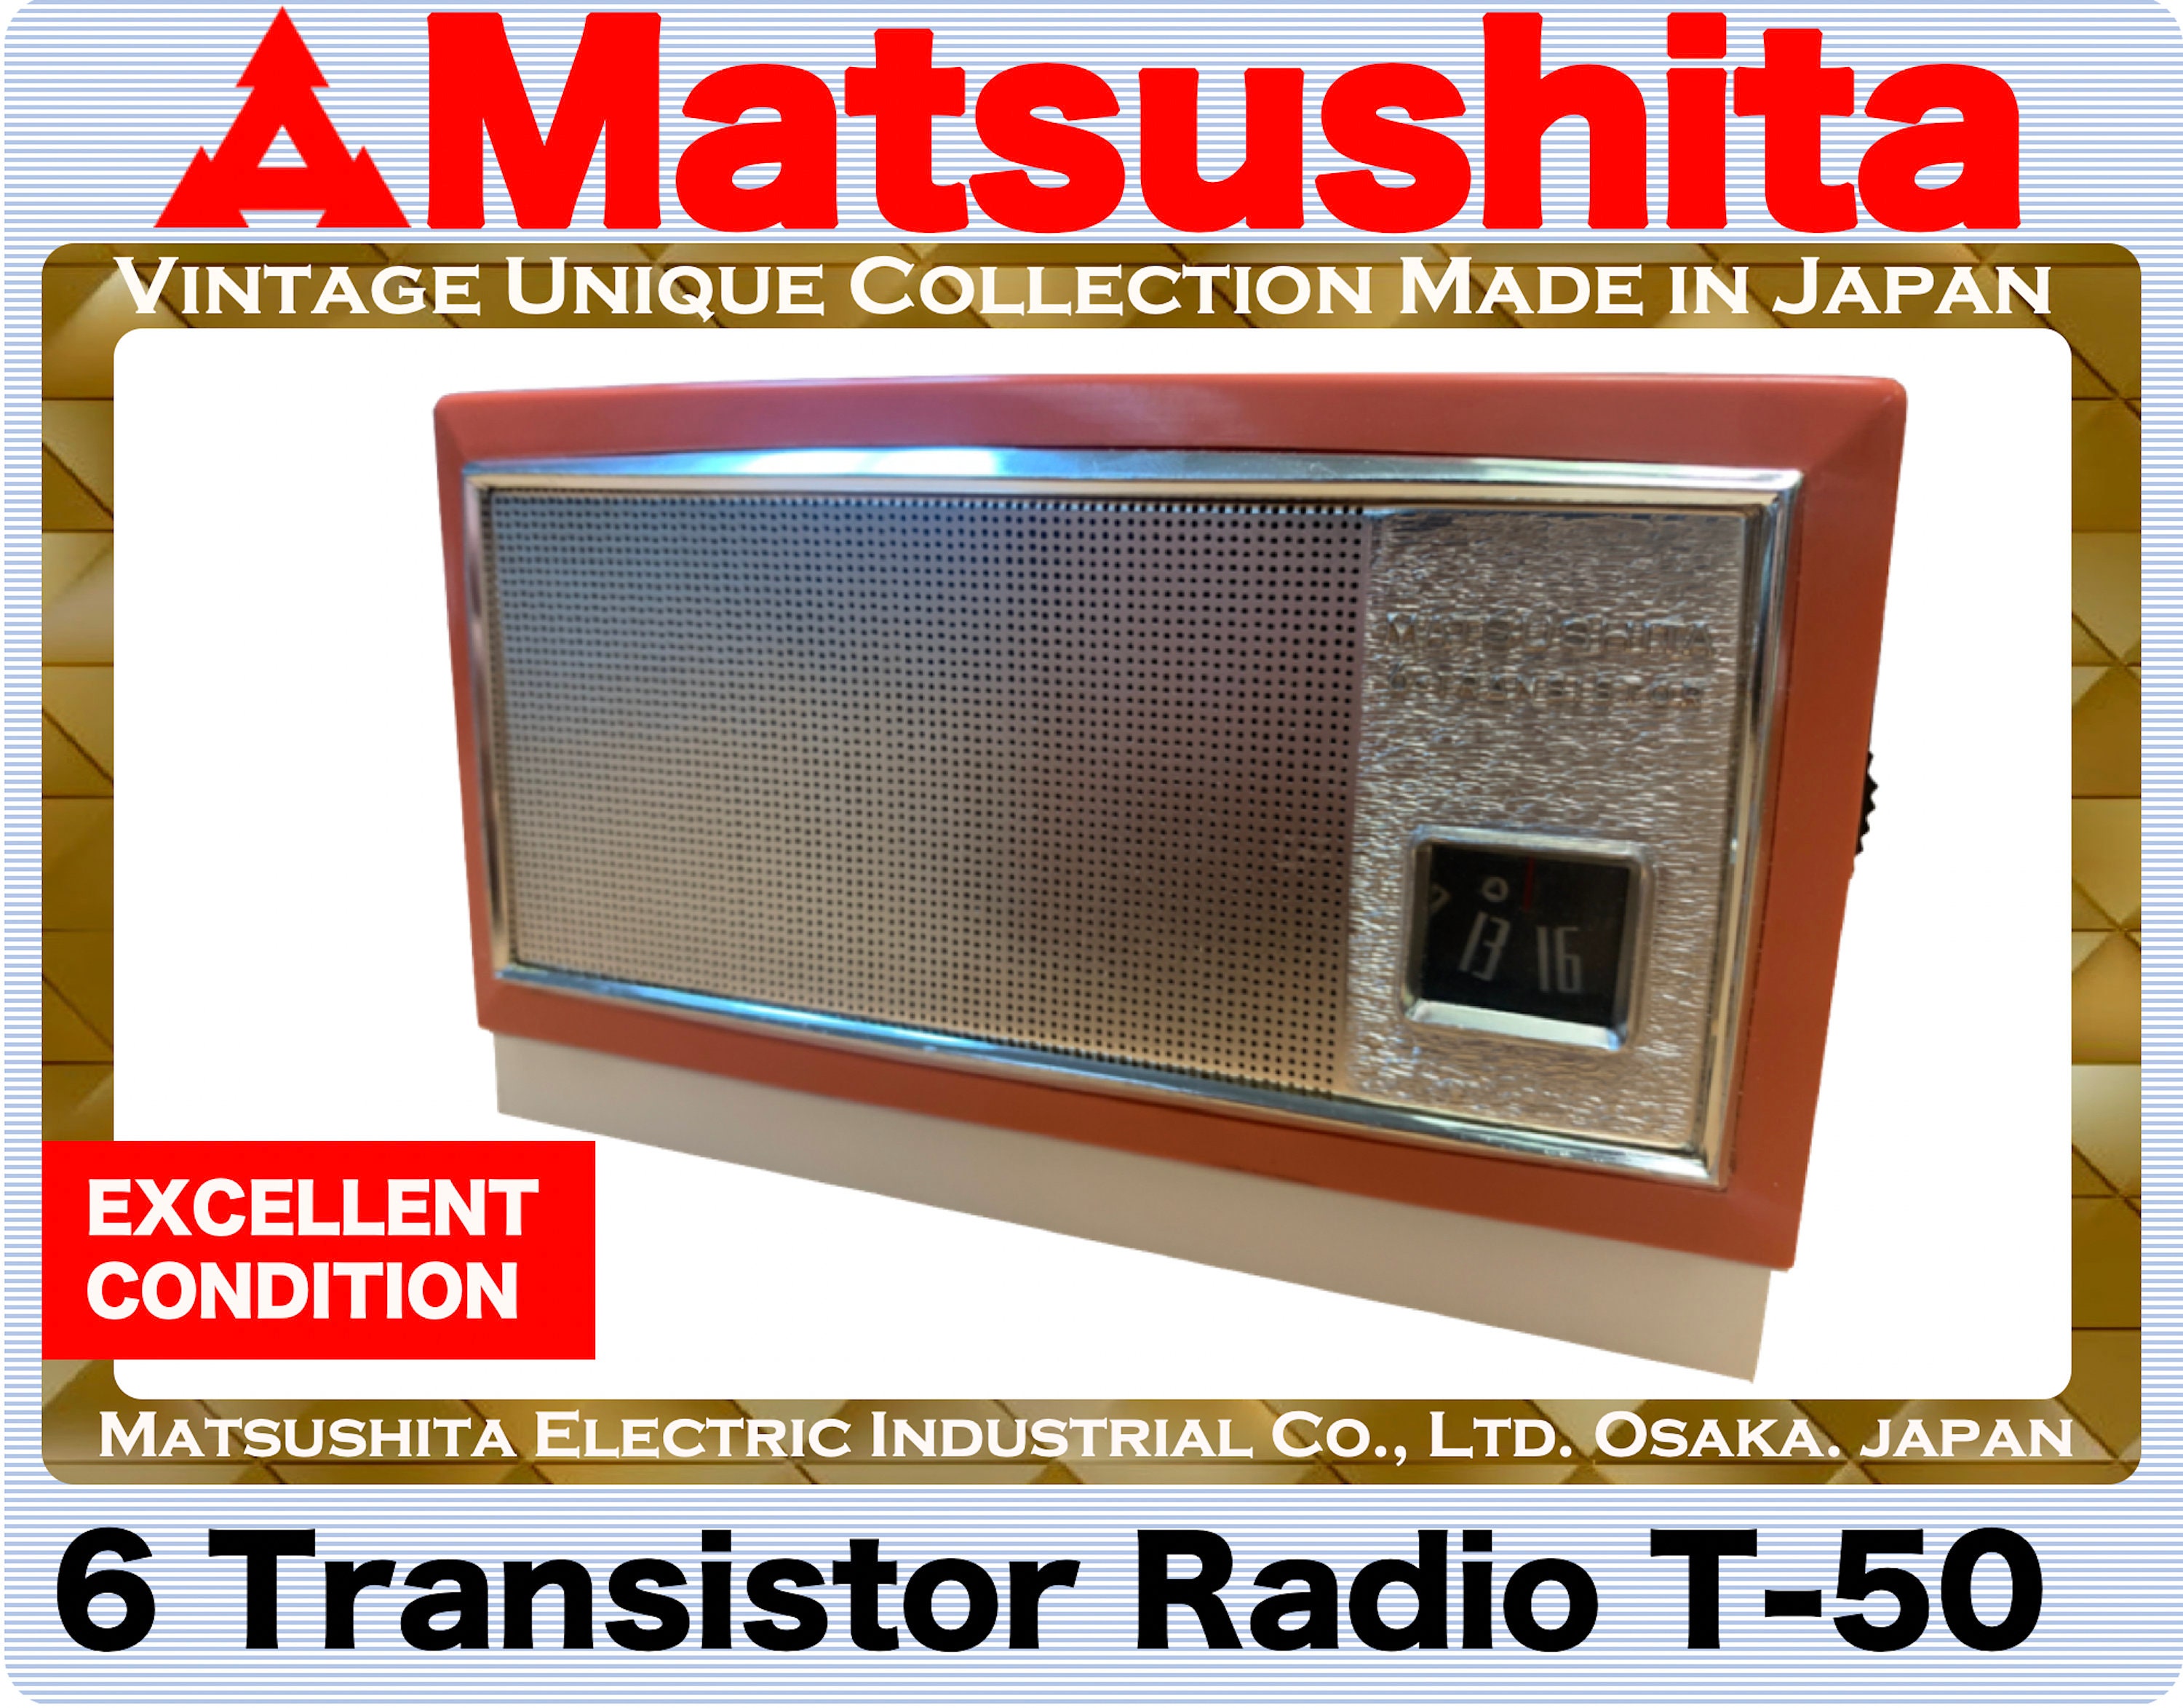 Matsushita Vintage - Etsy